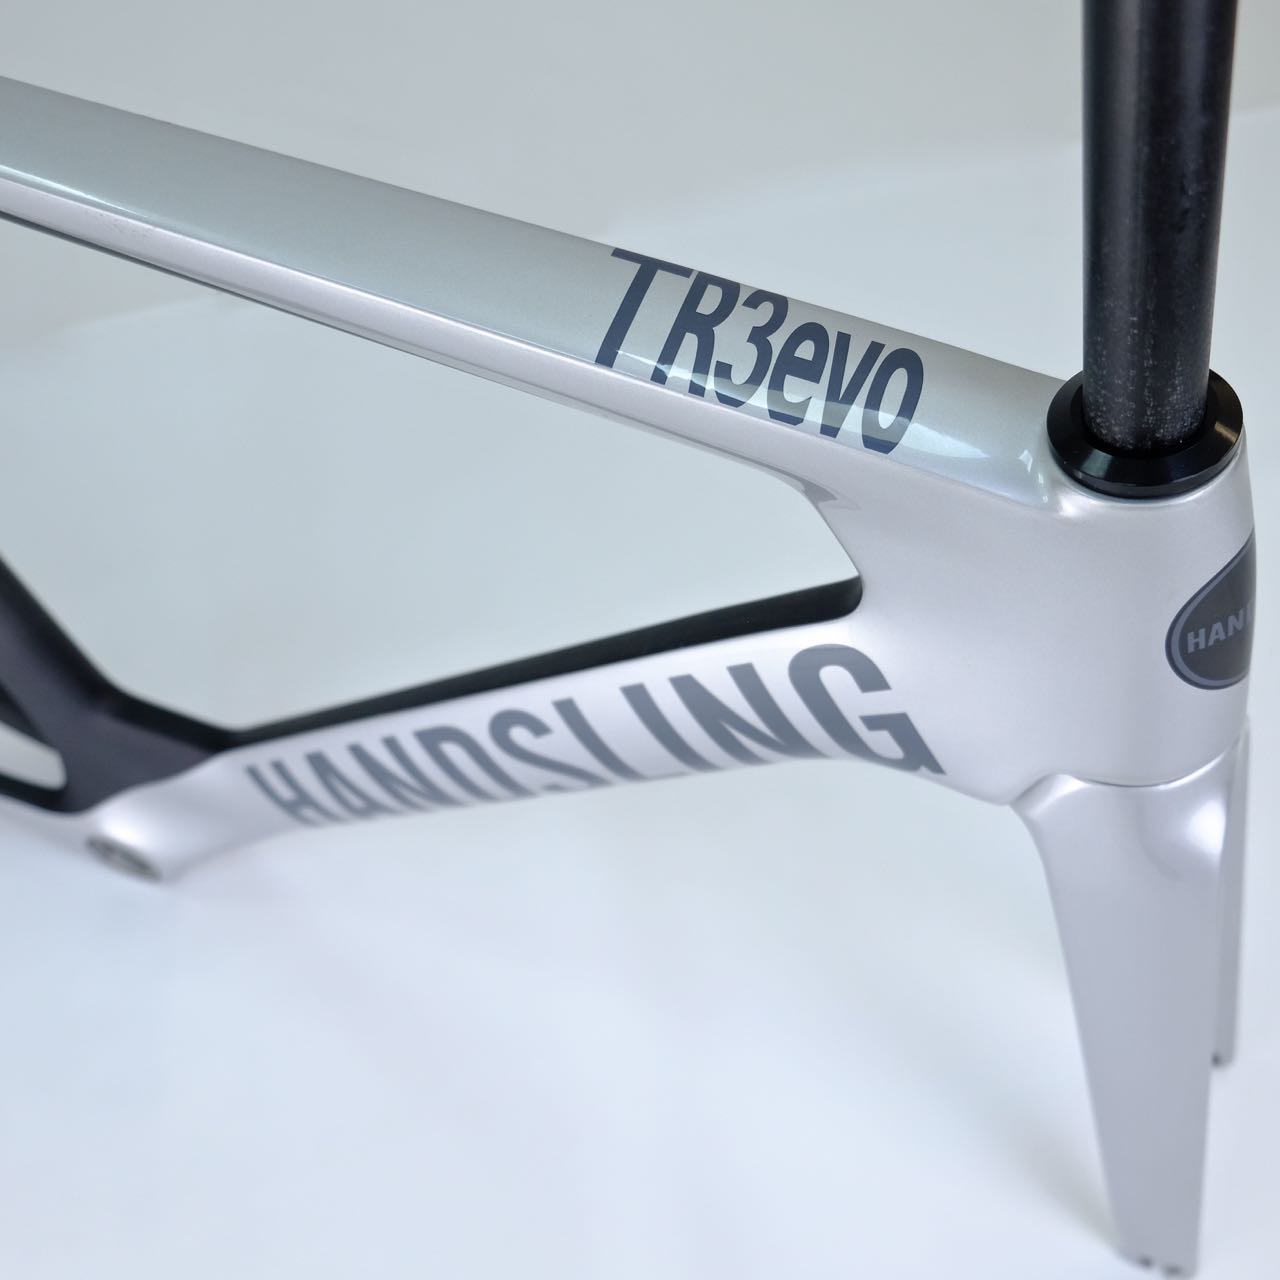 Handsling TR3evo Track Frame - Silver Bullet